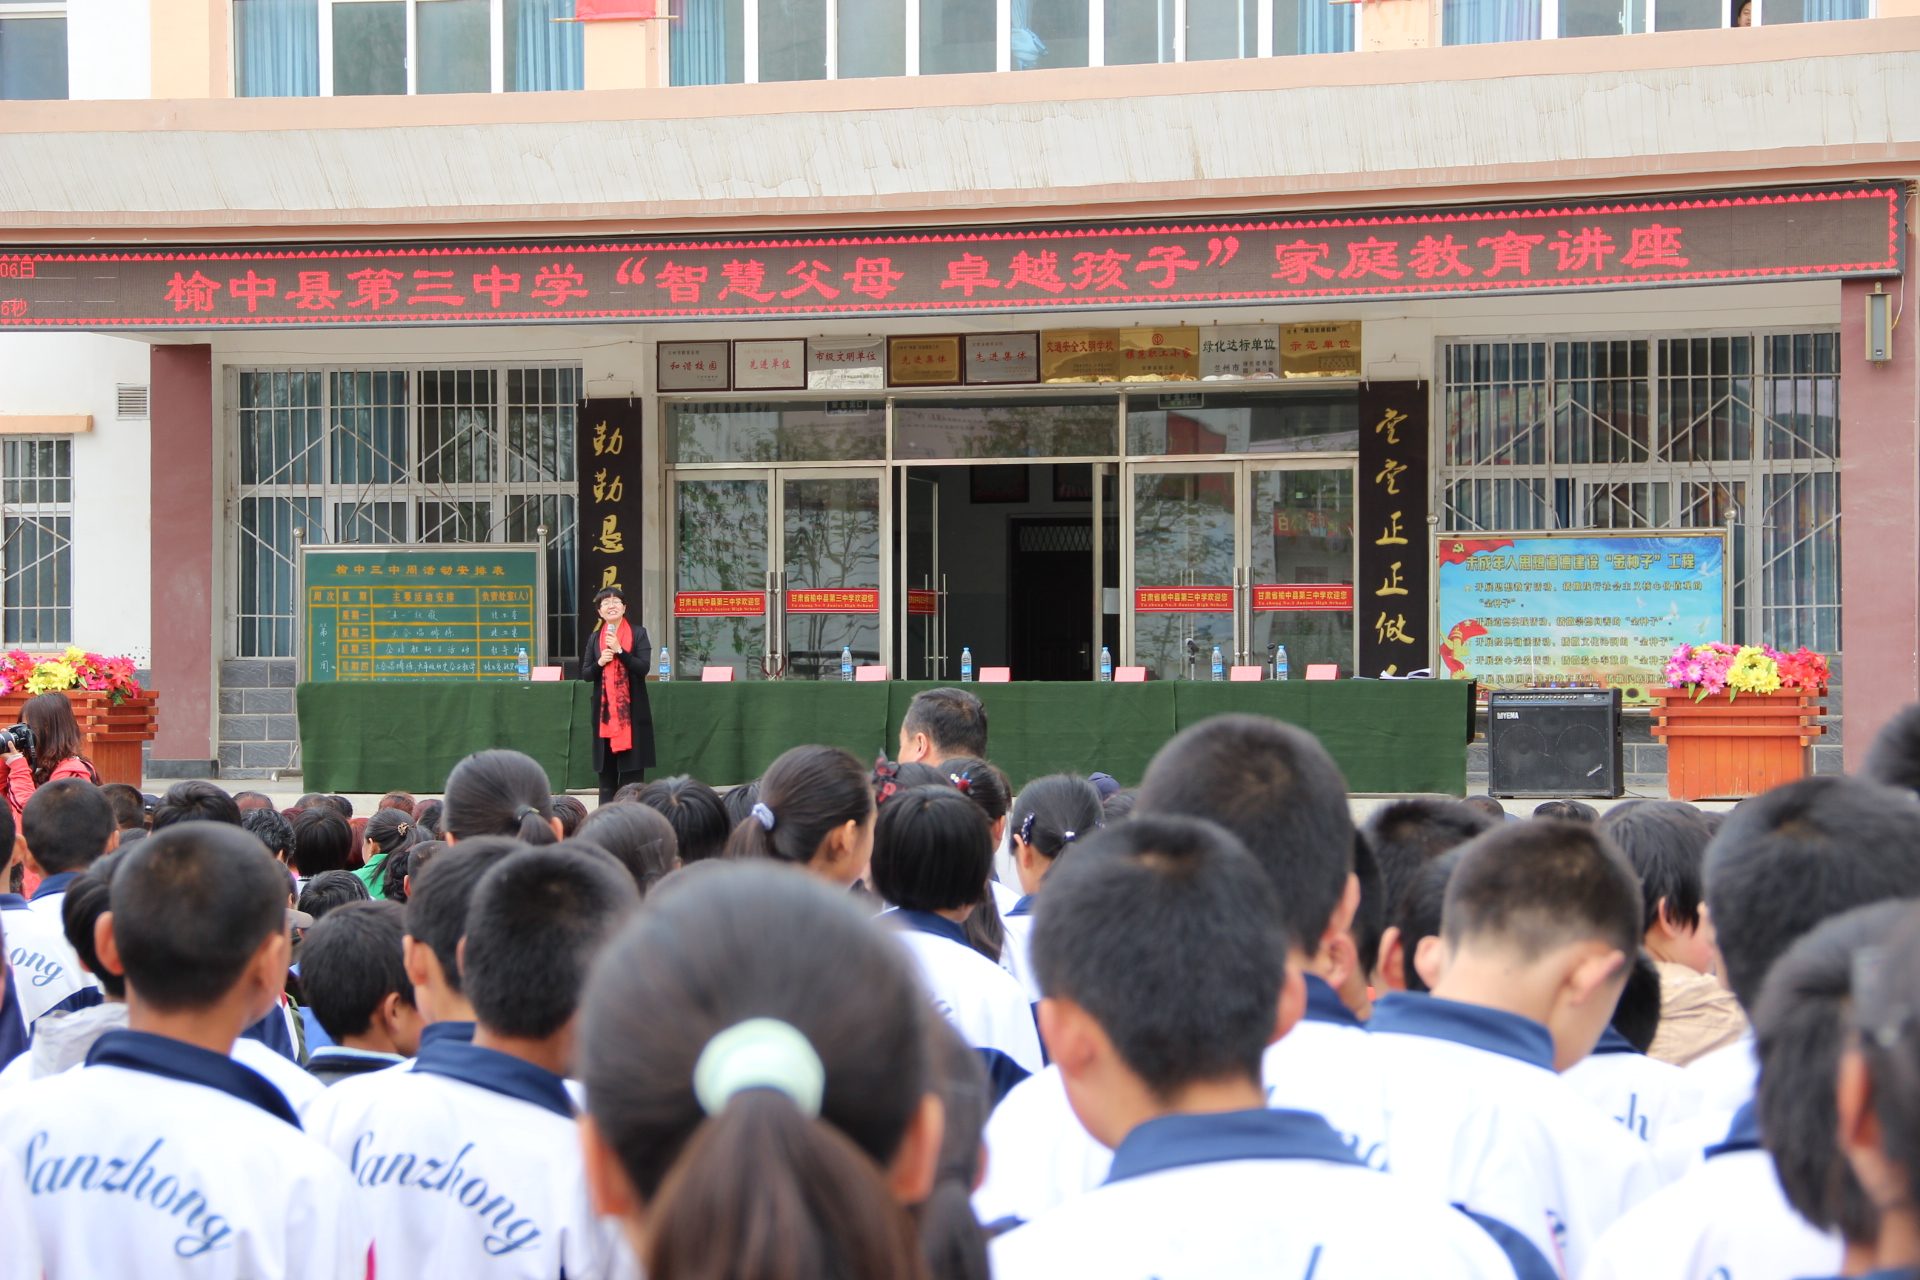 兰州市妇联在榆中县 及七里河区举办家庭教育公益讲座